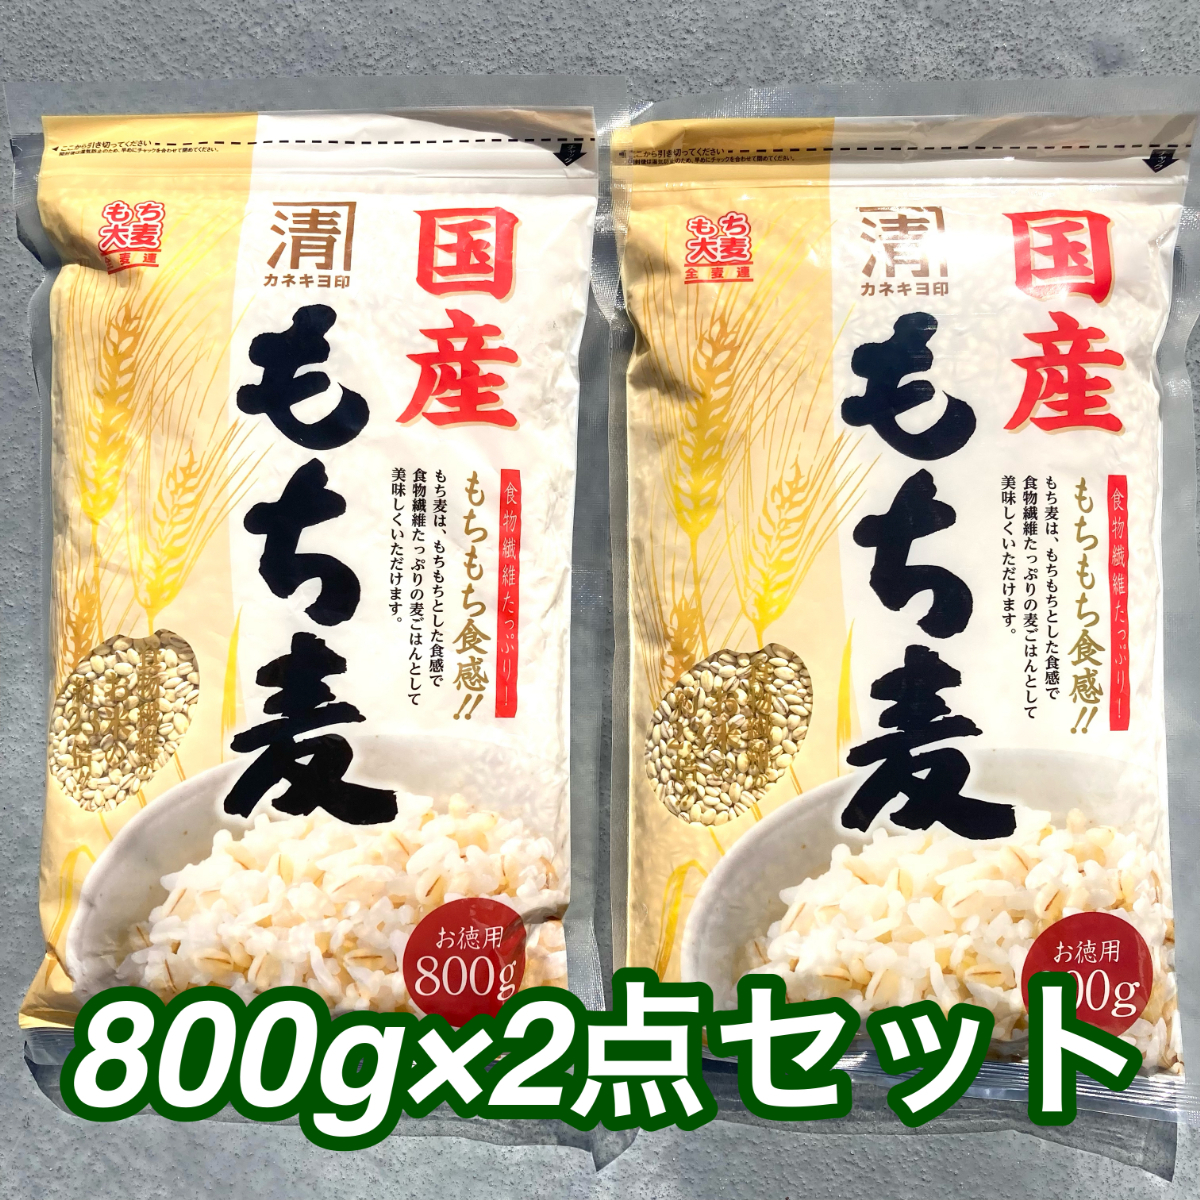 182【国産もち麦 800g×2袋】 カネキヨ印 西田精麦 食物繊維 _画像1